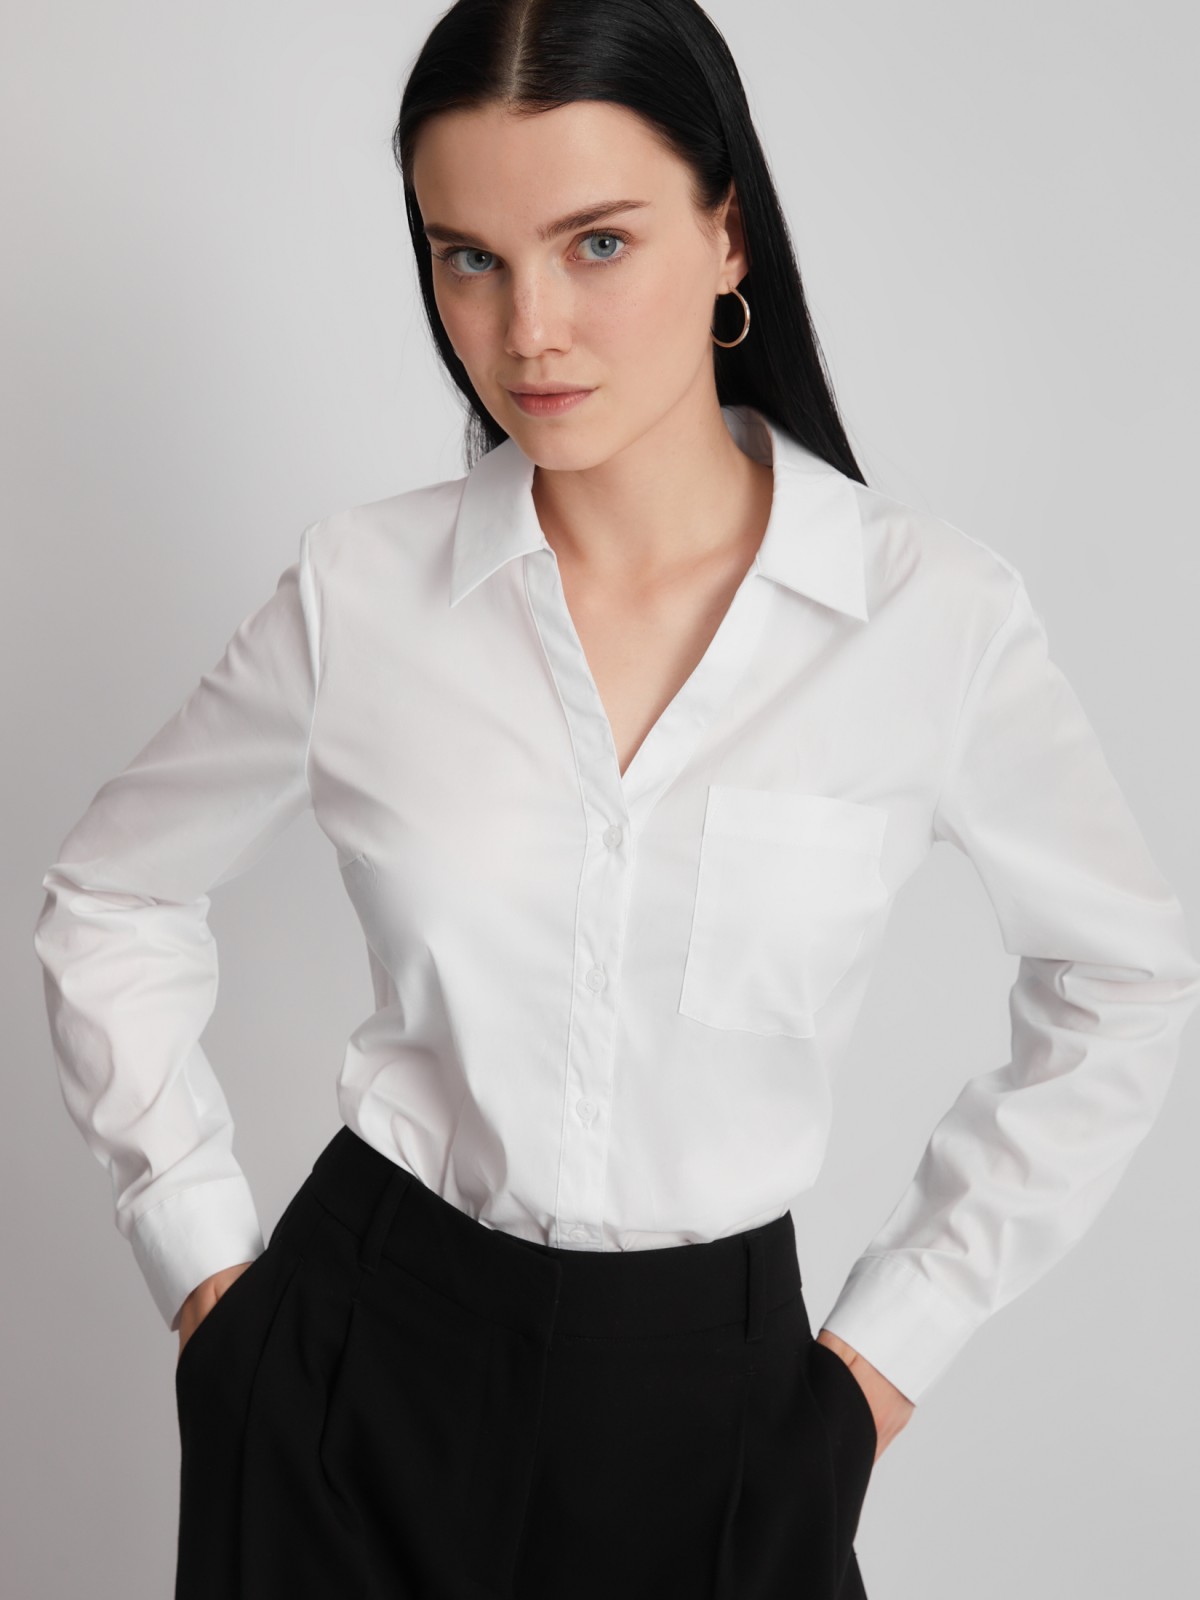 Офисная рубашка с вырезом и карманом zolla 023311159112, цвет белый, размер S - фото 1